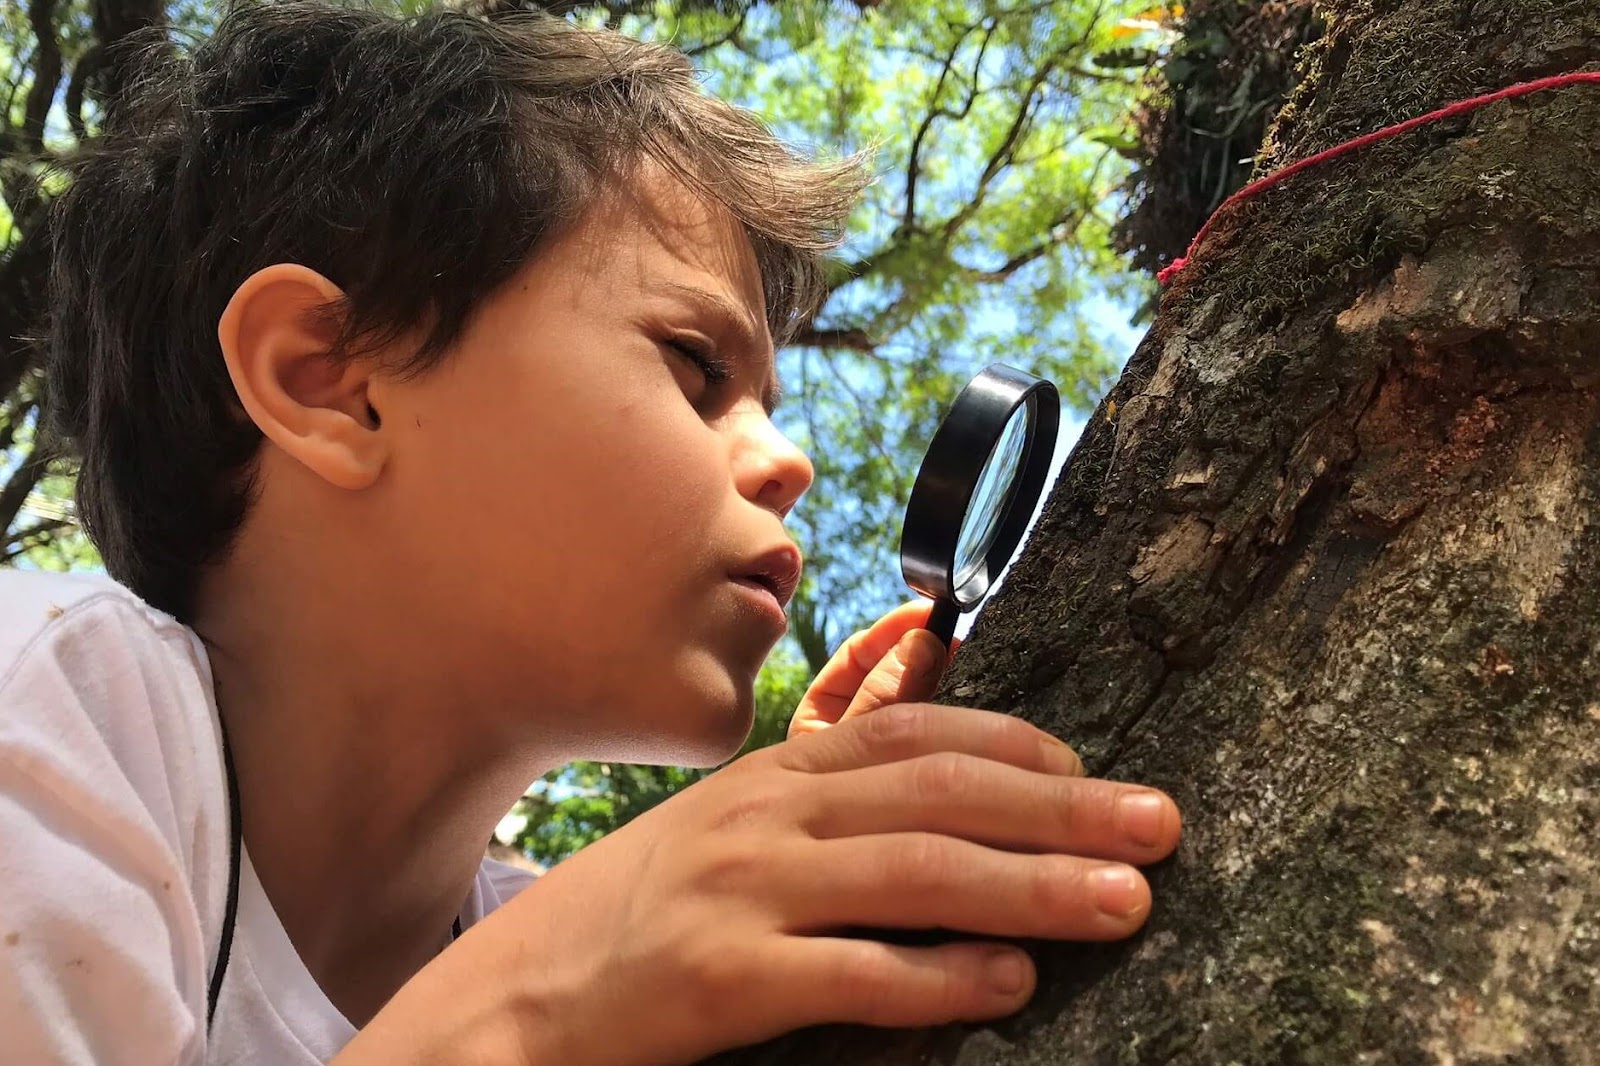 A imagem mostra um menino segurando uma lupa. Ele observa algo no tronco de uma árvore.